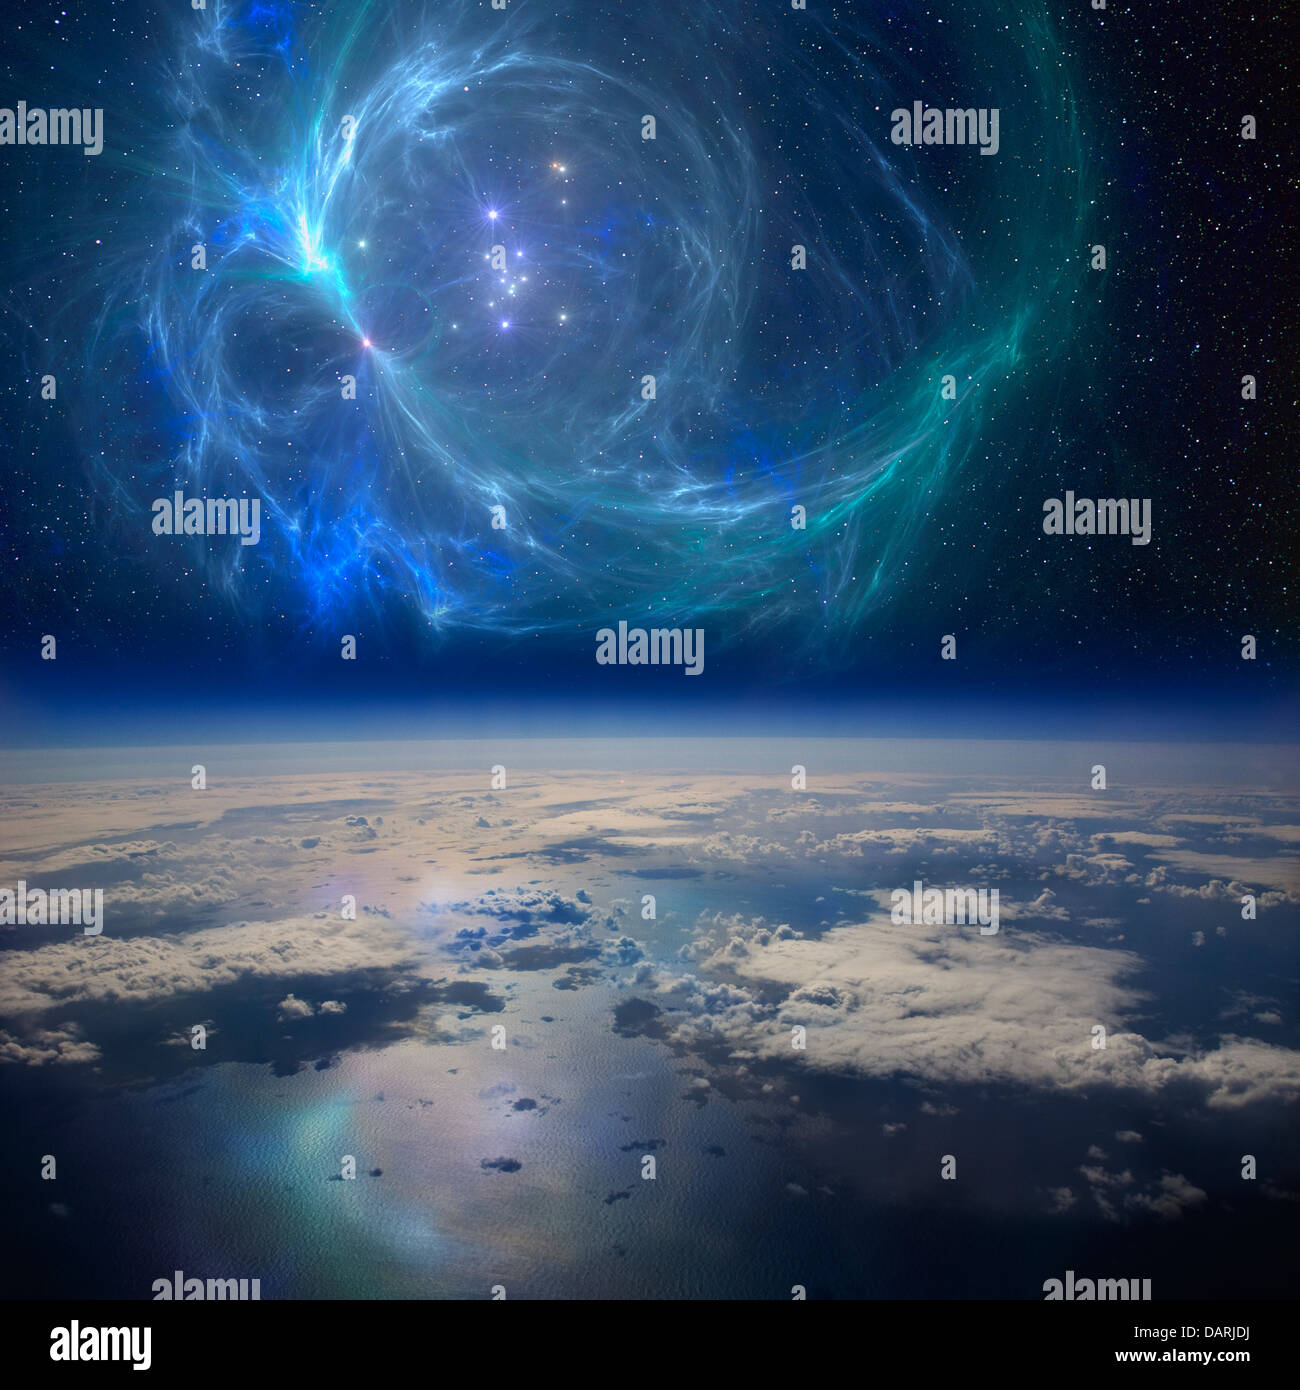 La messa a terra nei pressi di una bella nebulosa nello spazio. Un composito concettuale dell'immagine. Foto Stock